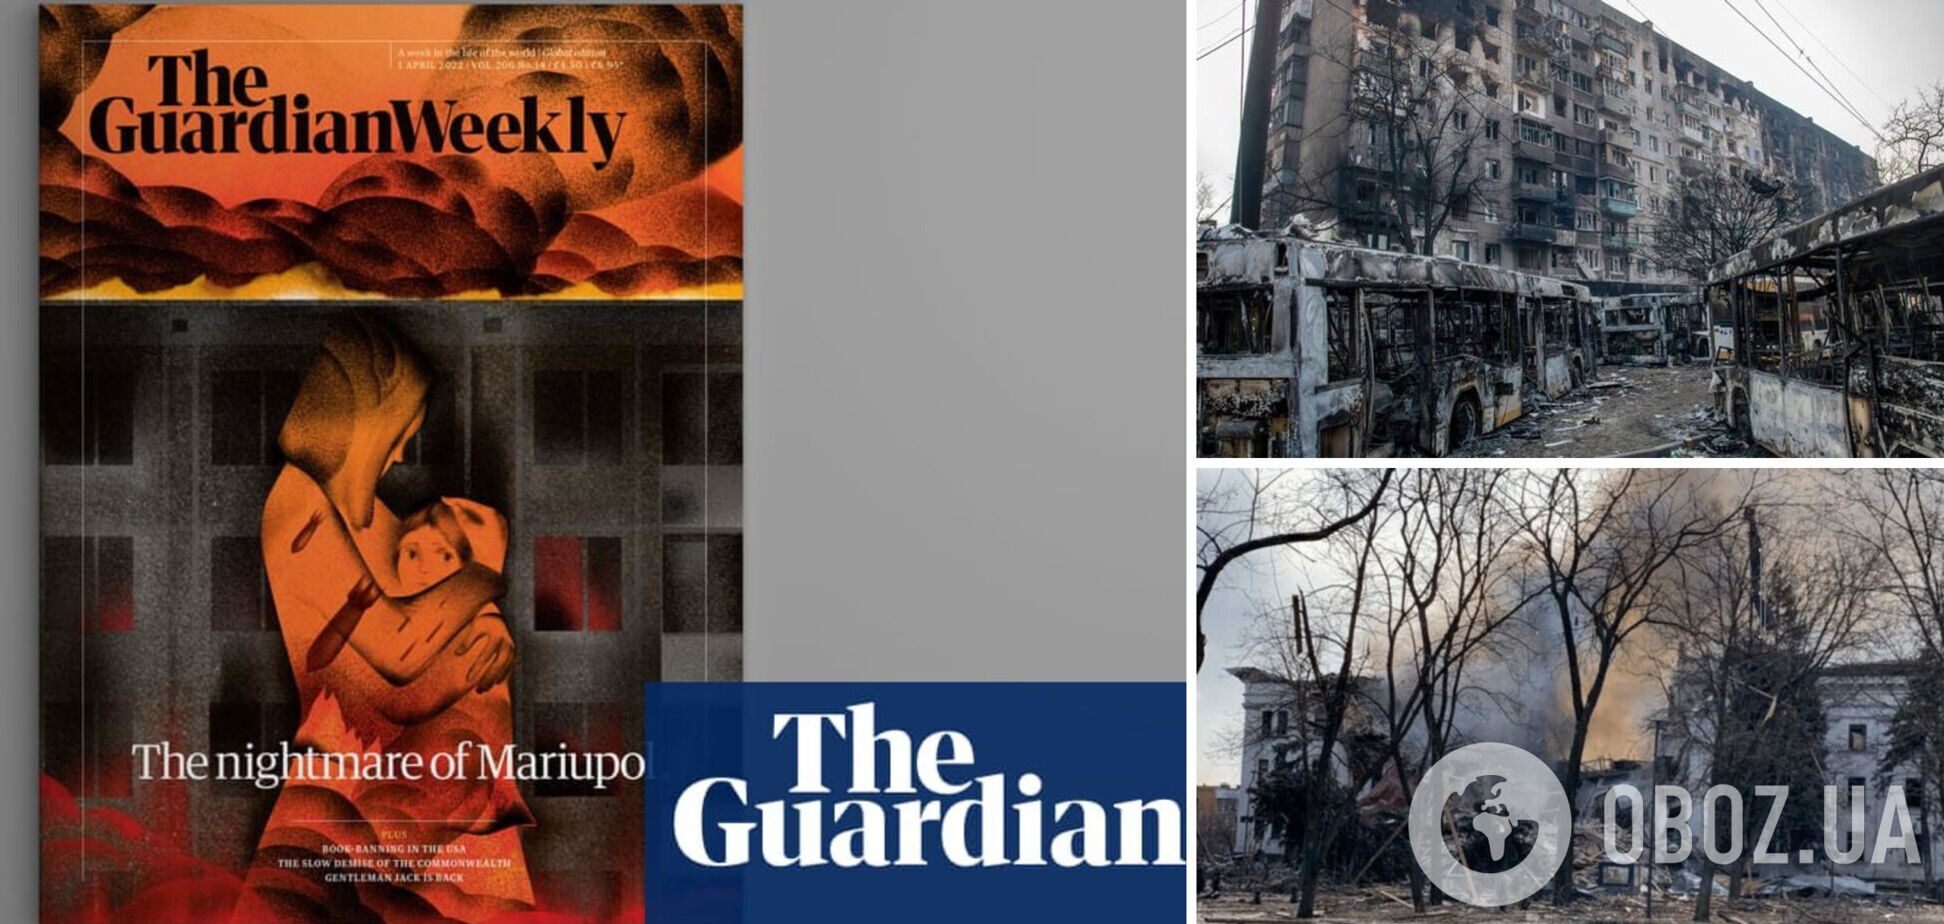  The Guardian посвятило обложку трагедии в Мариуполе